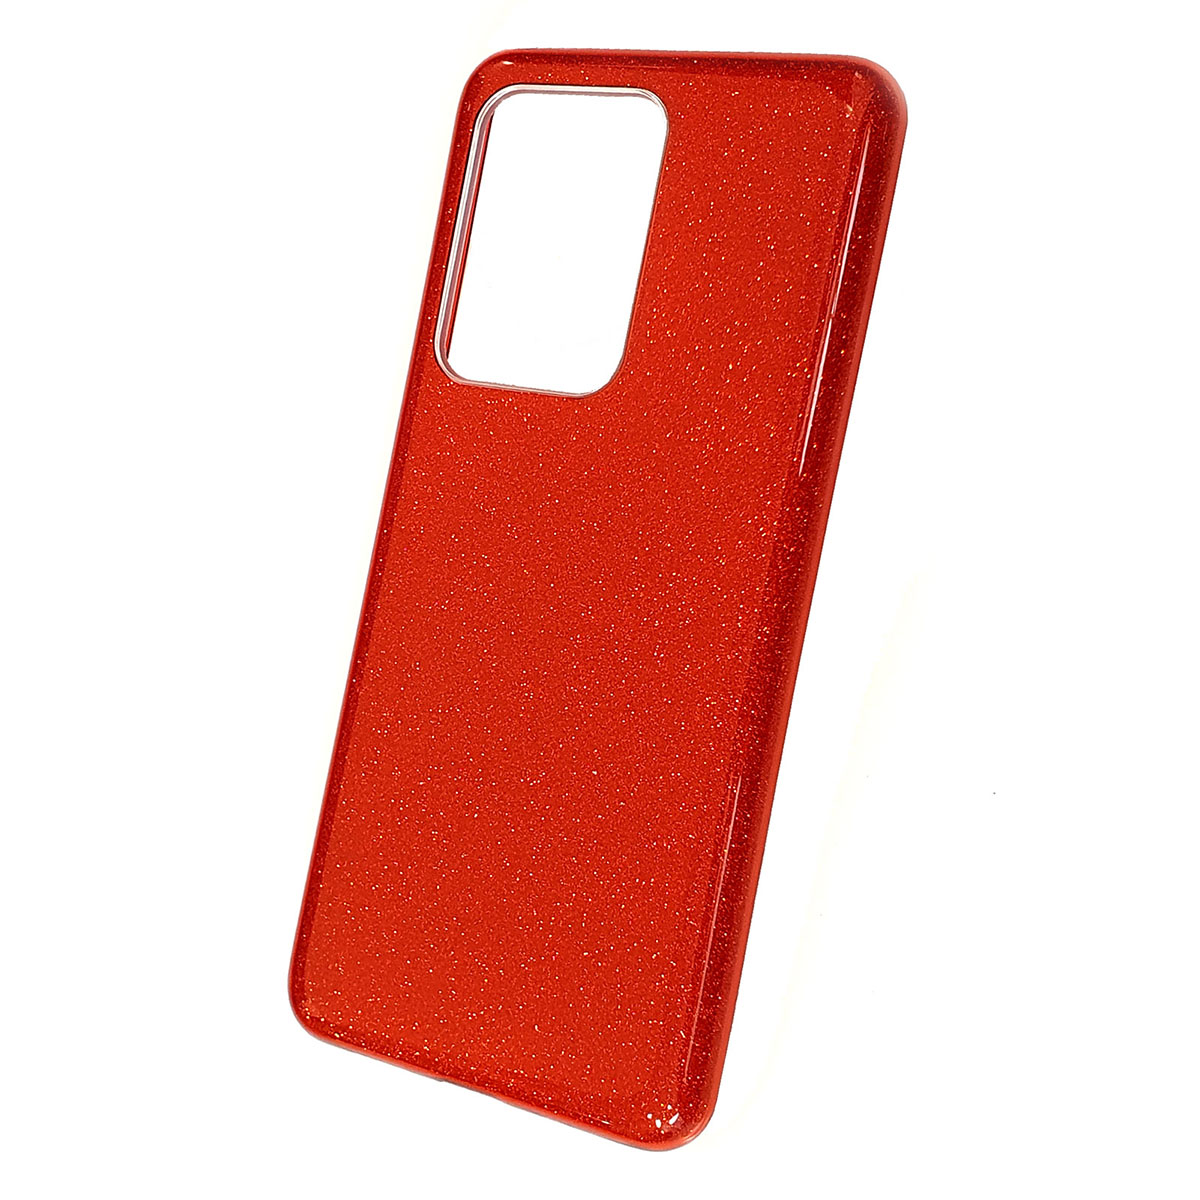 Чехол накладка Shine для SAMSUNG Galaxy S20 Ultra (SM-G988), силикон, блестки, цвет красный.